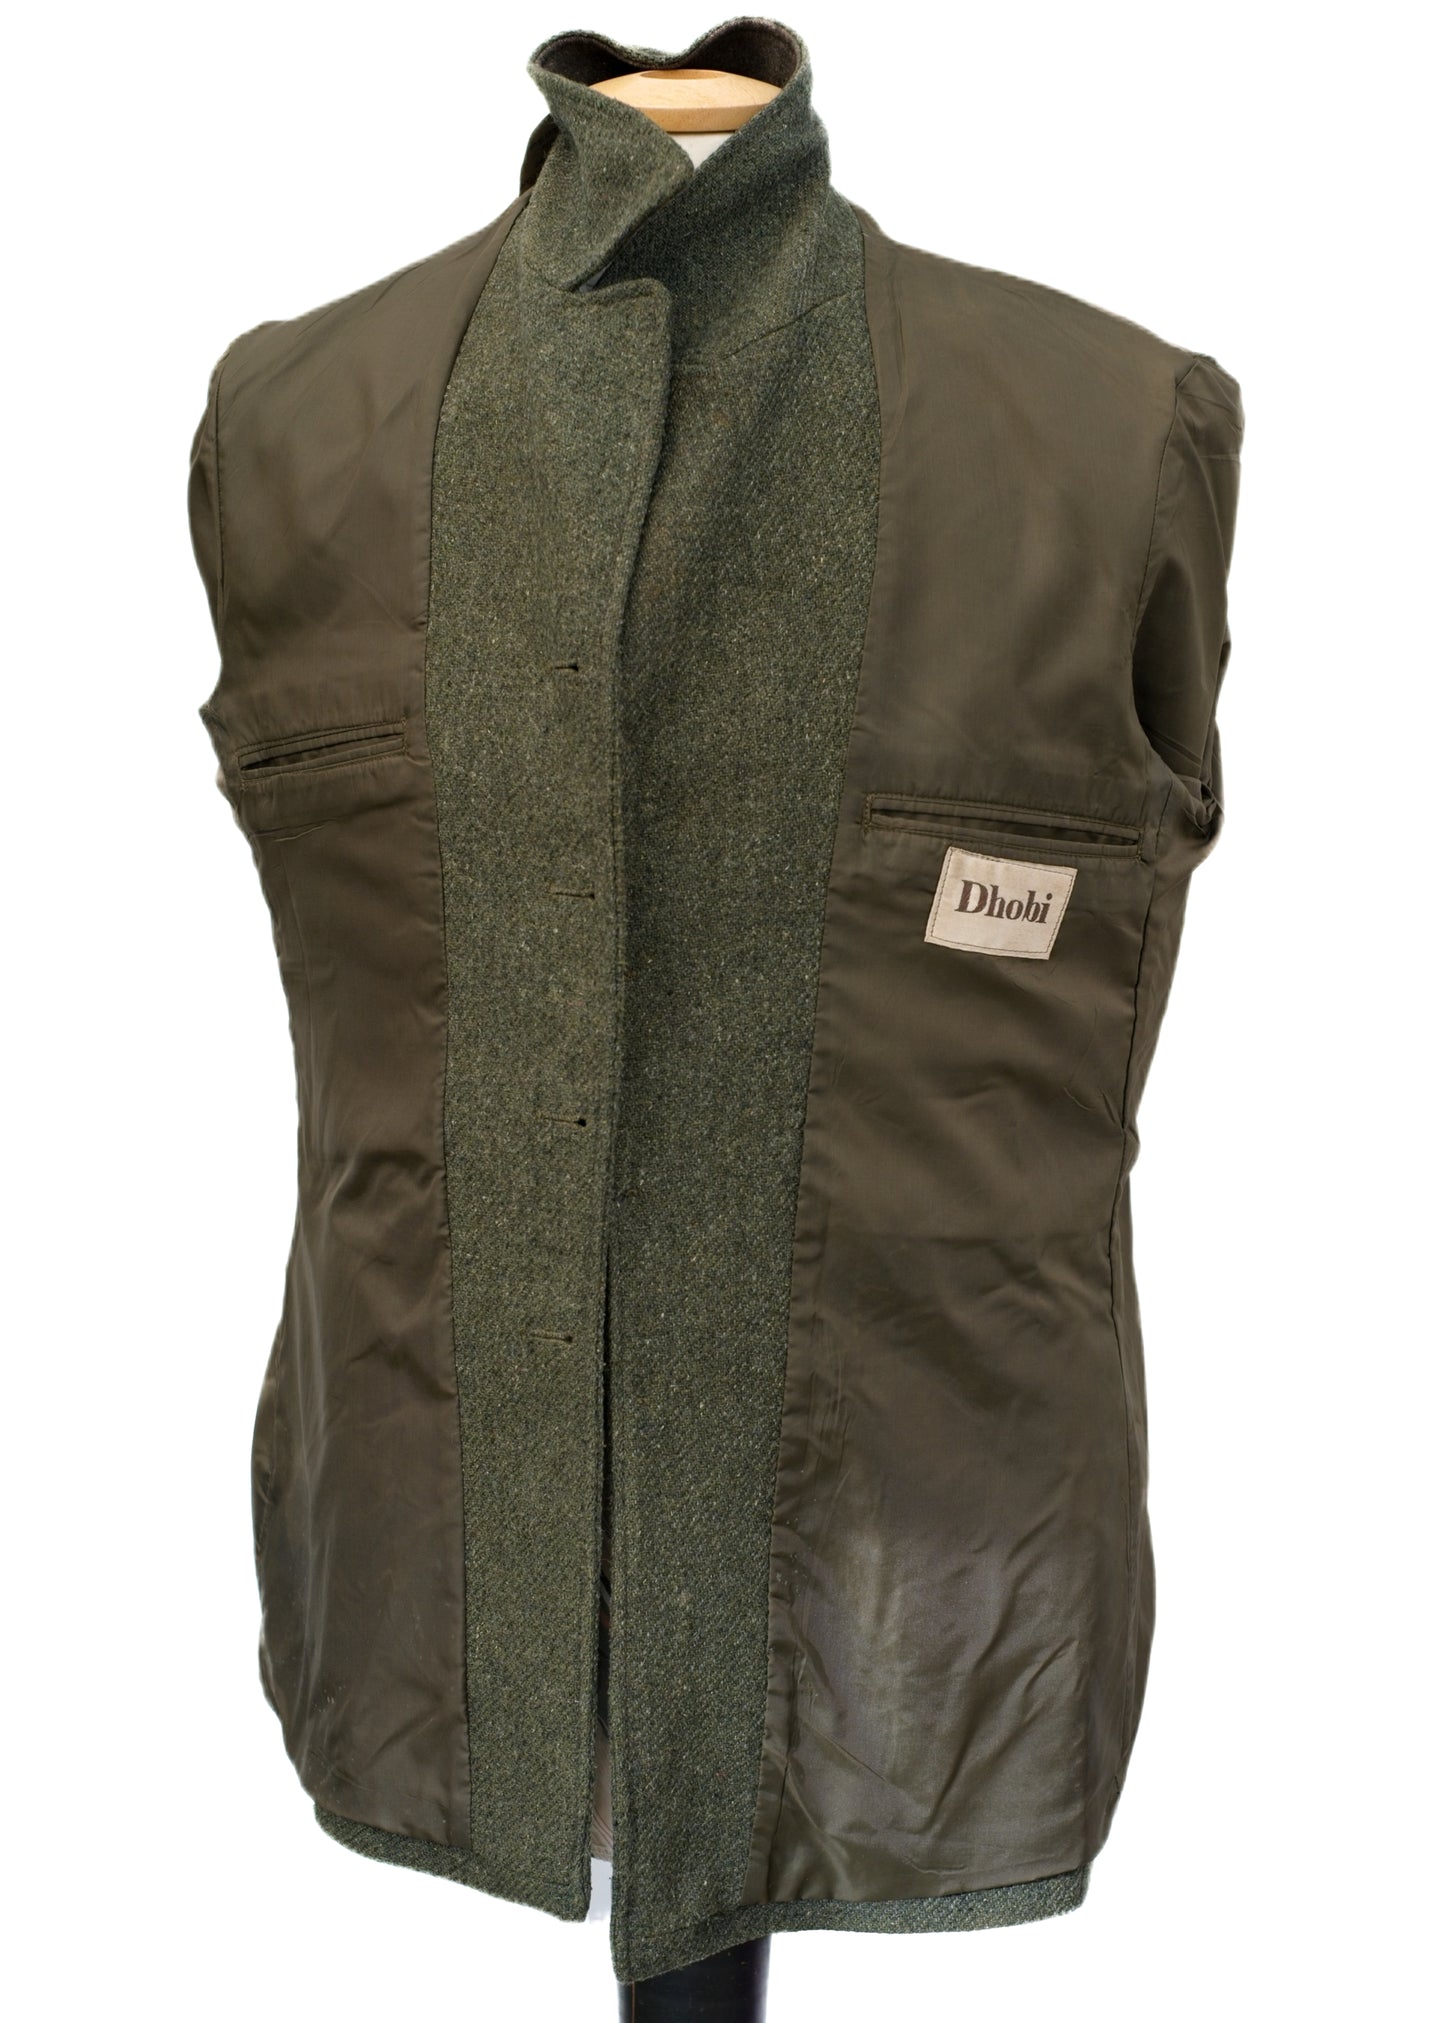 Vintage Green Tweed Half Norfolk Keeper's Jacket • Dhobi